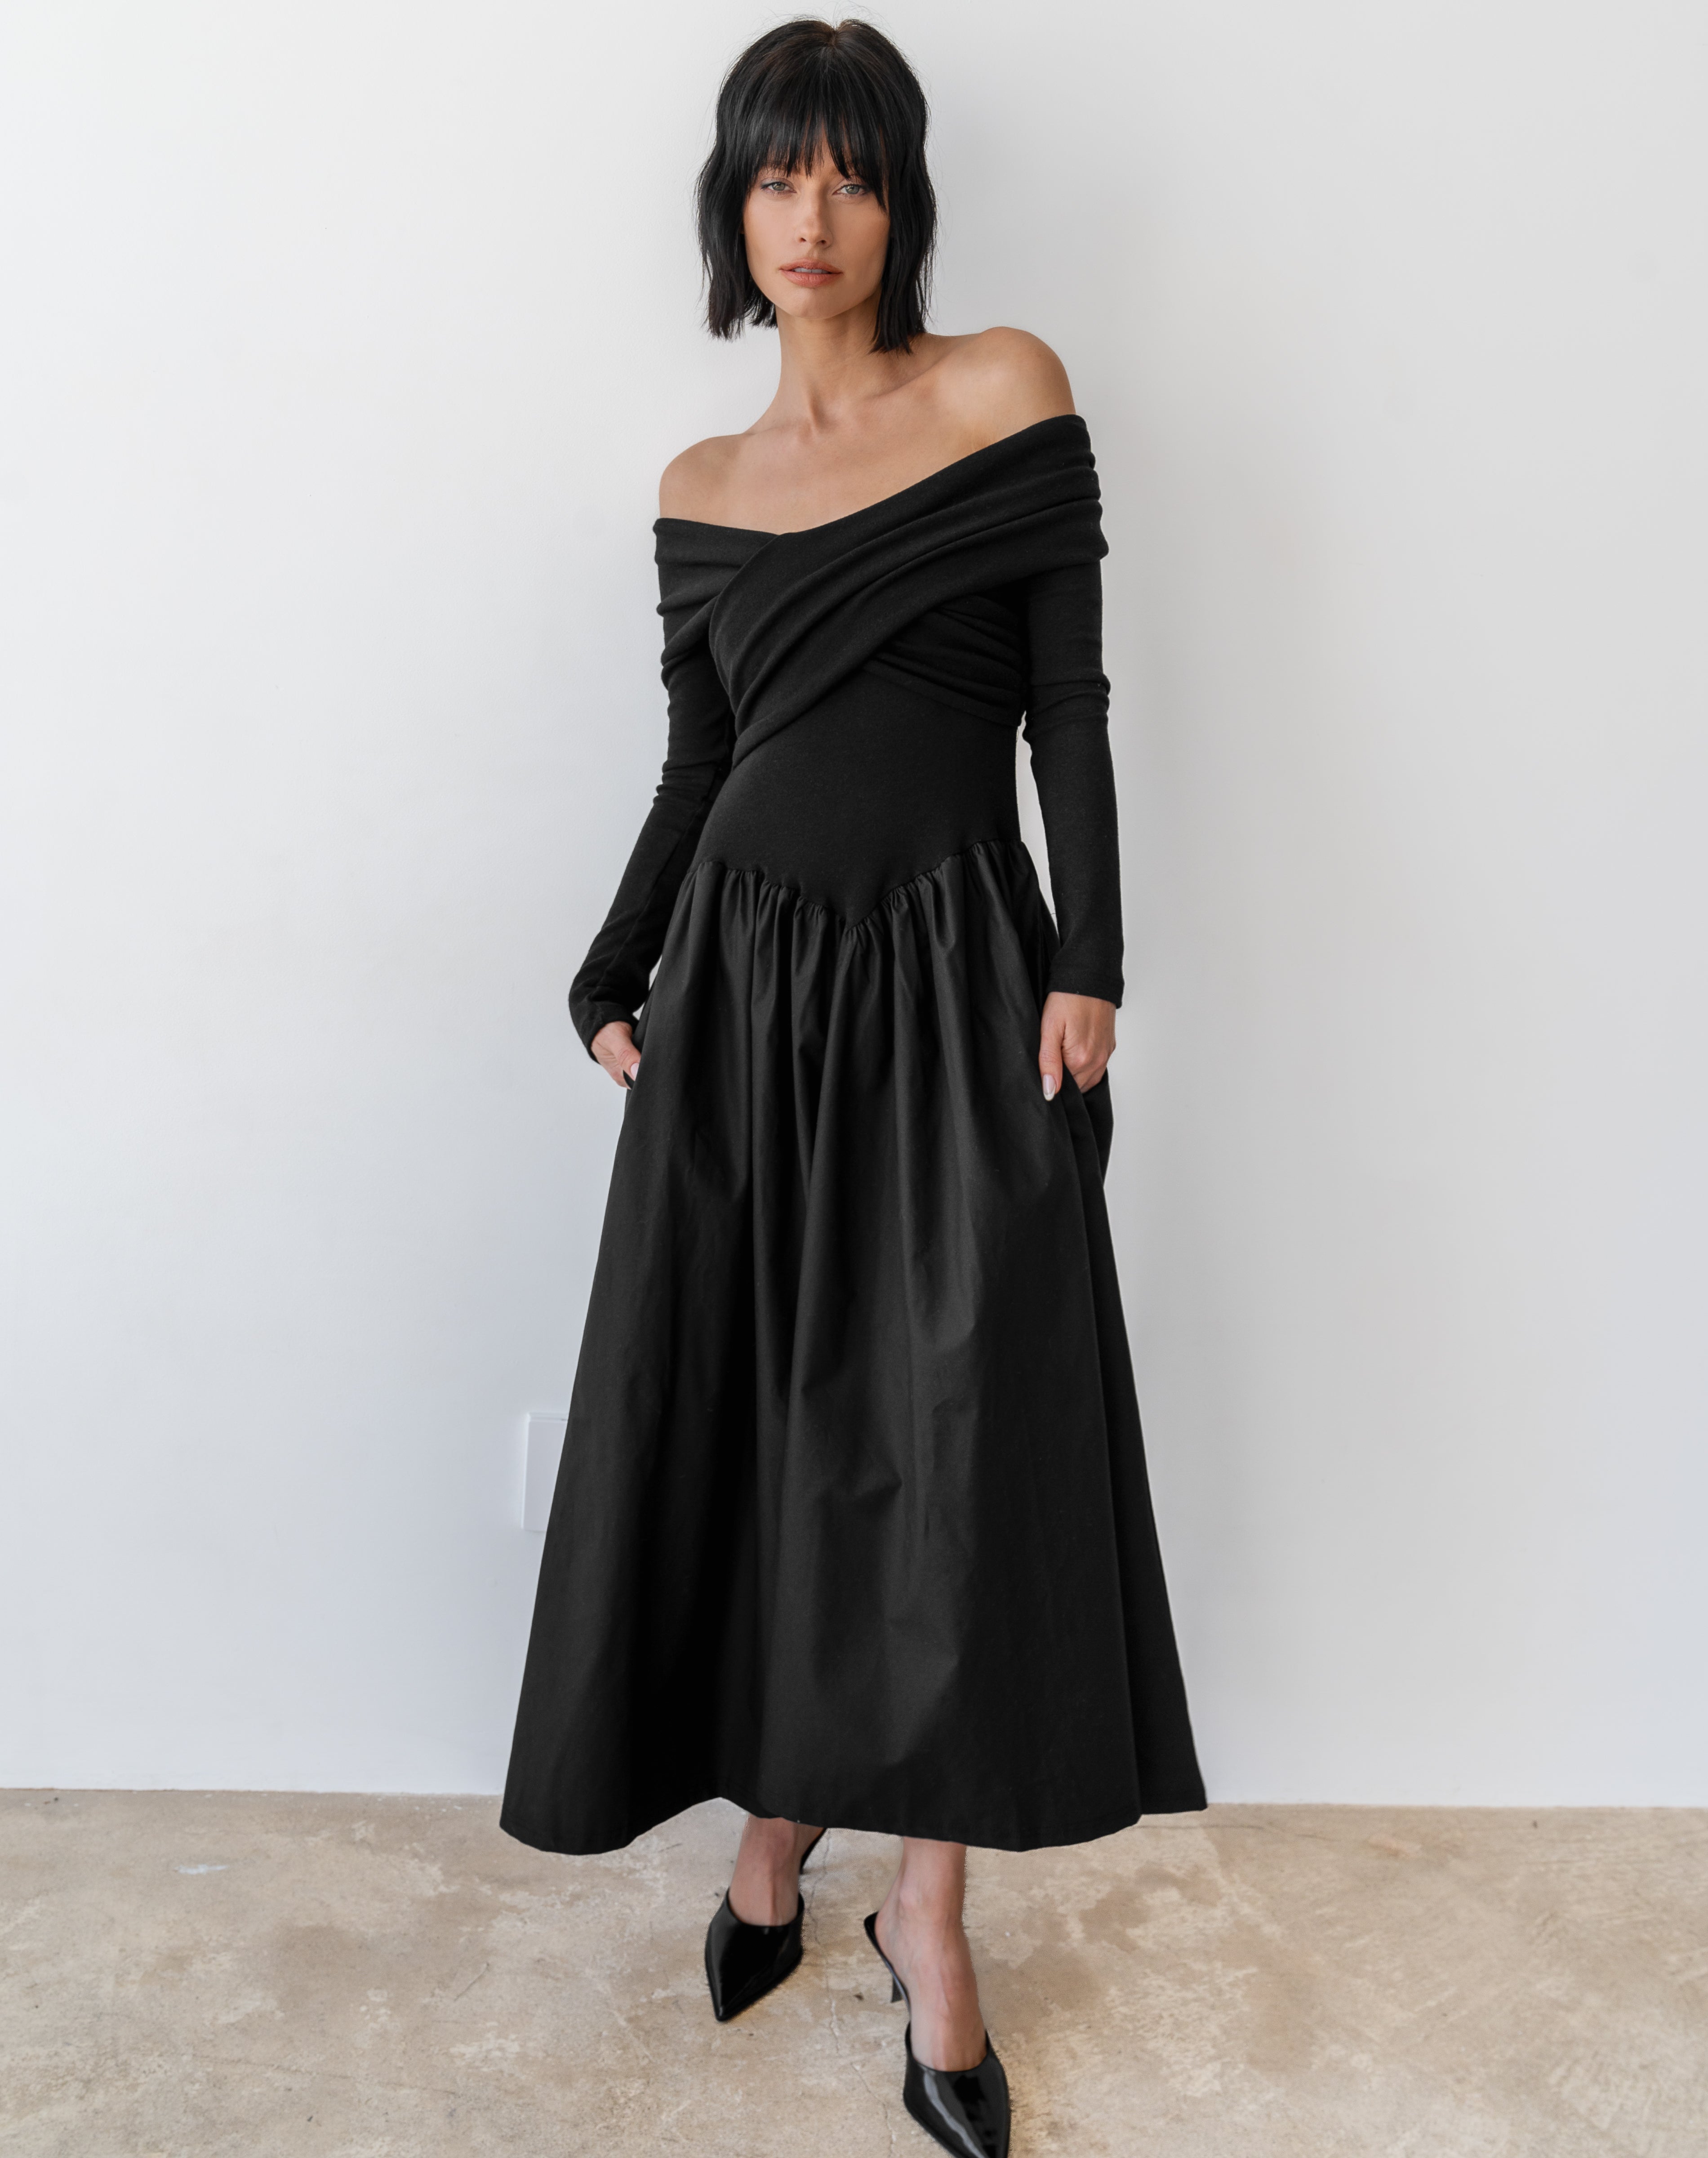 [PRE-ORDER]Chloe Off Shoulder Long Sleeve Basque Dress, Black